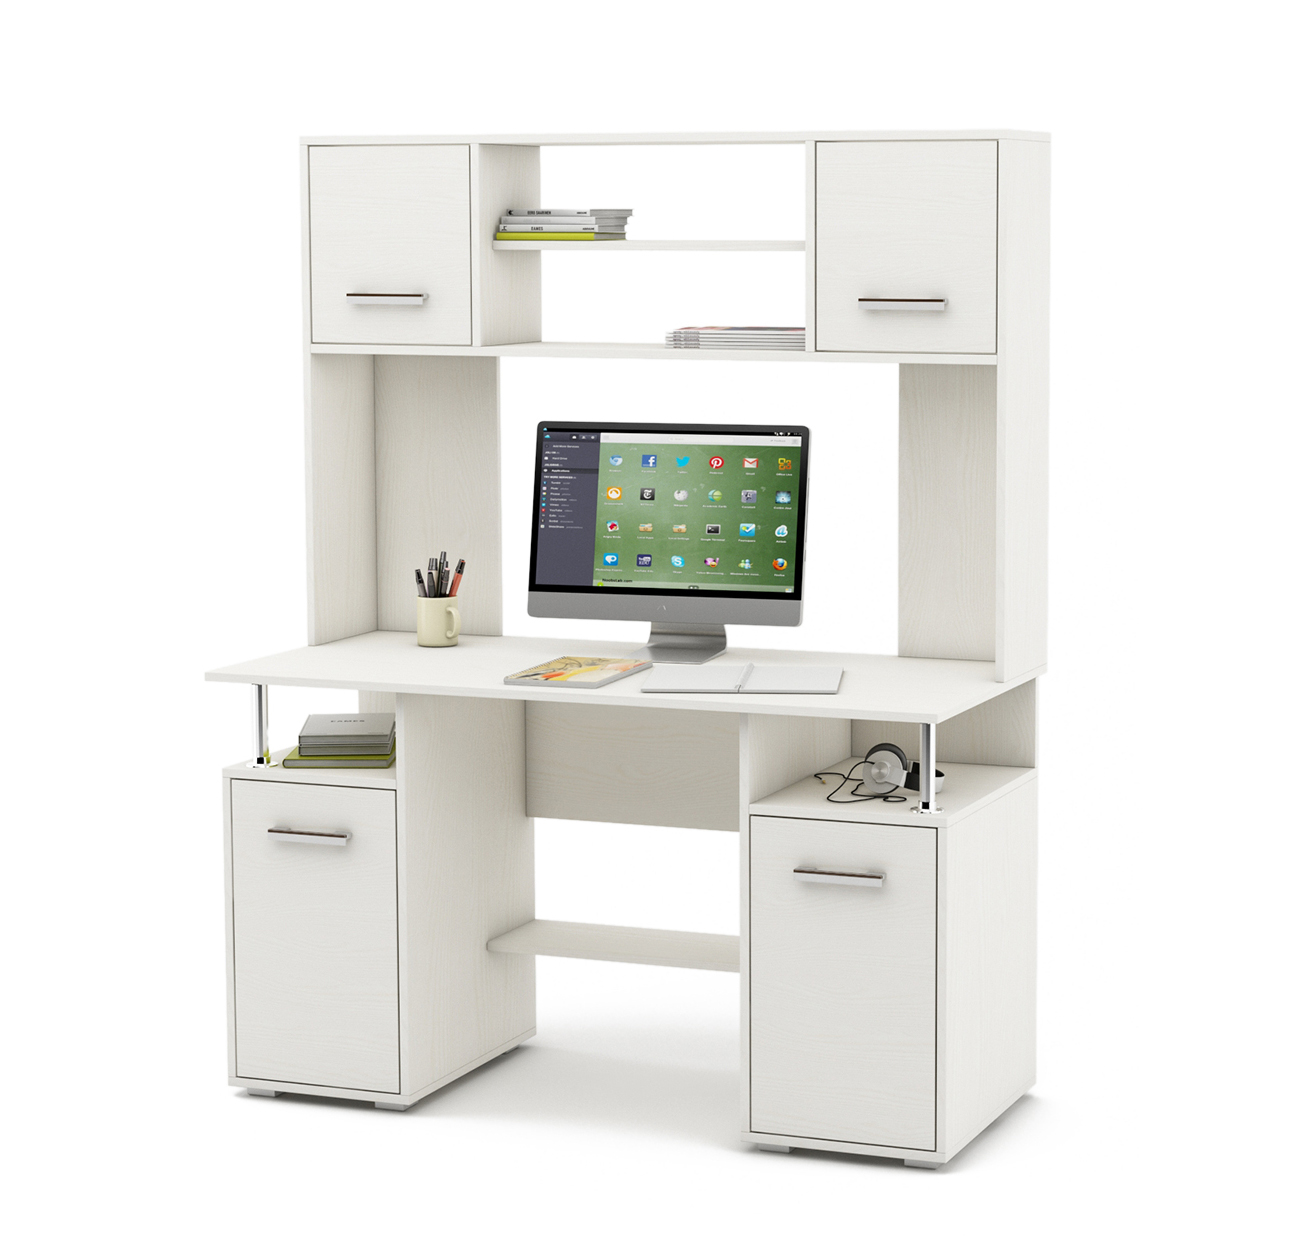 компьютерный стол с надстройкой для принтера и шкафчиками